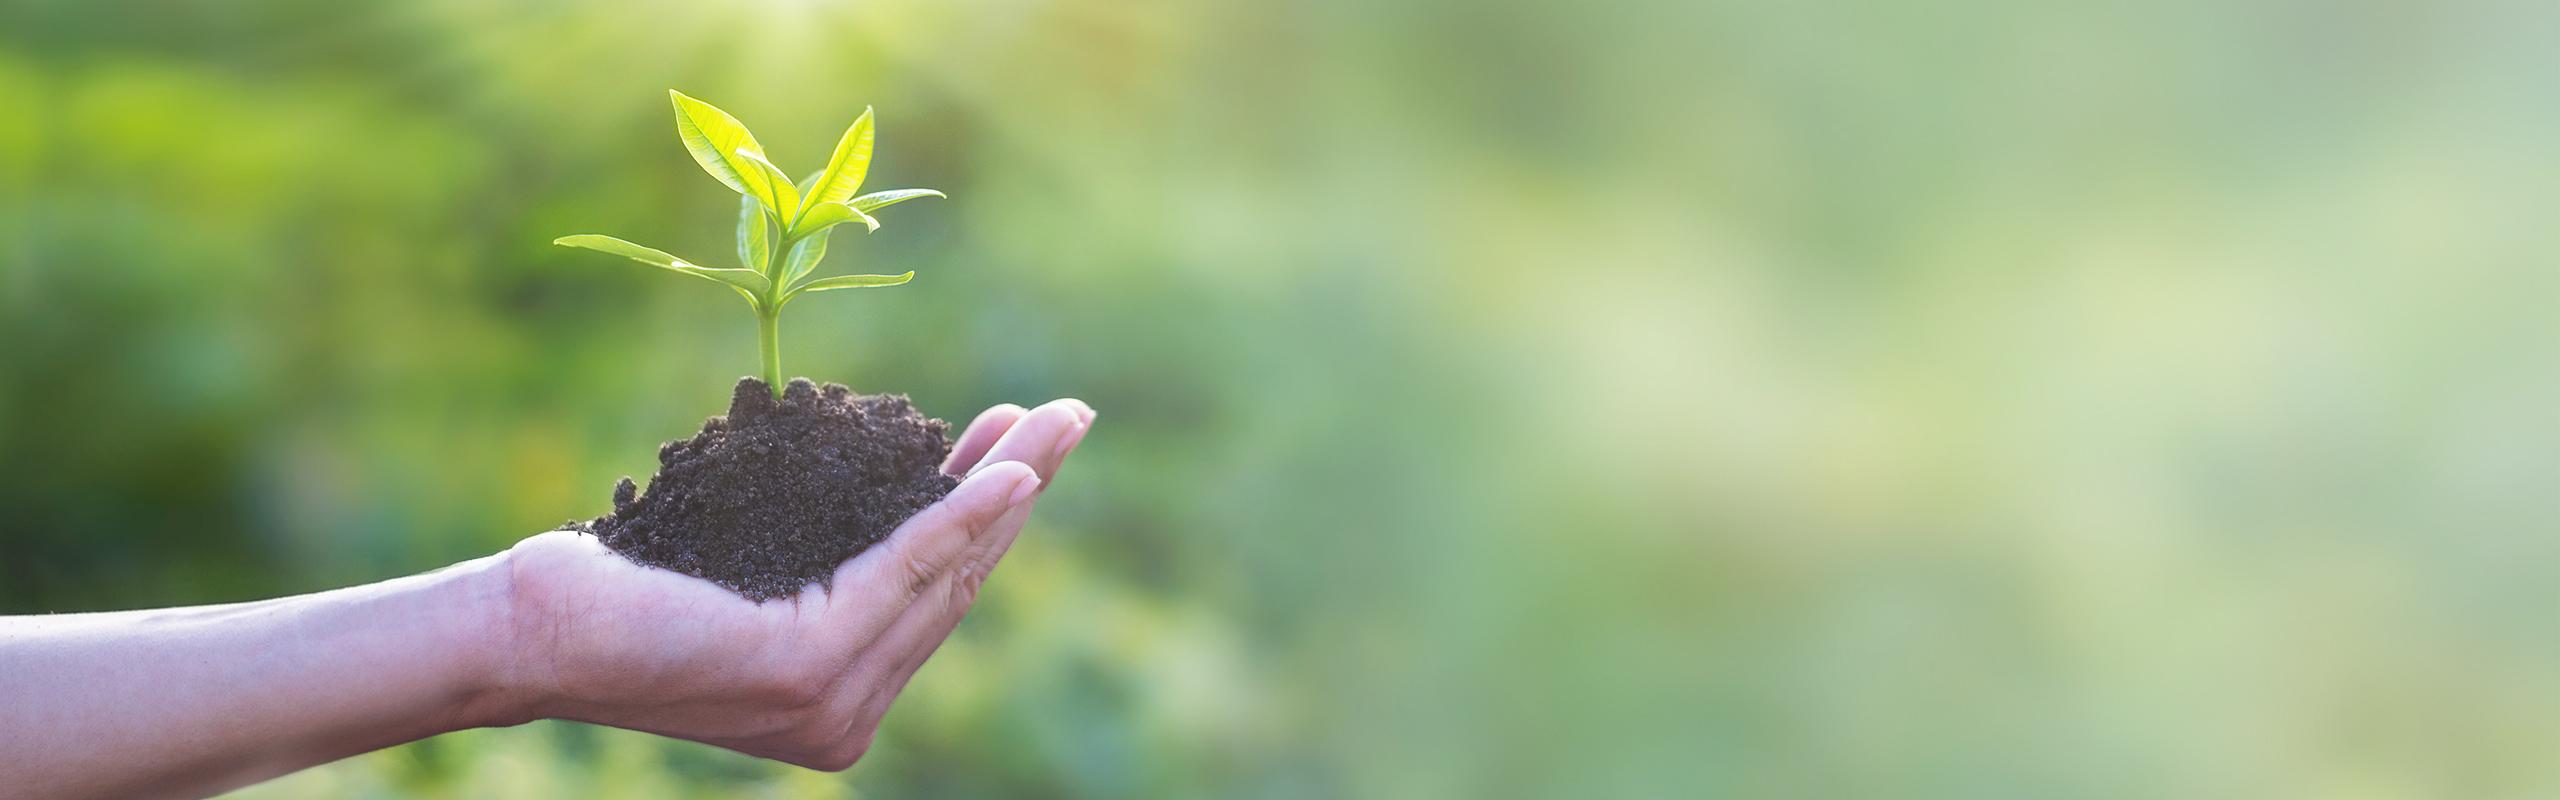 BRITA duurzaamheid kluit met plant in hand